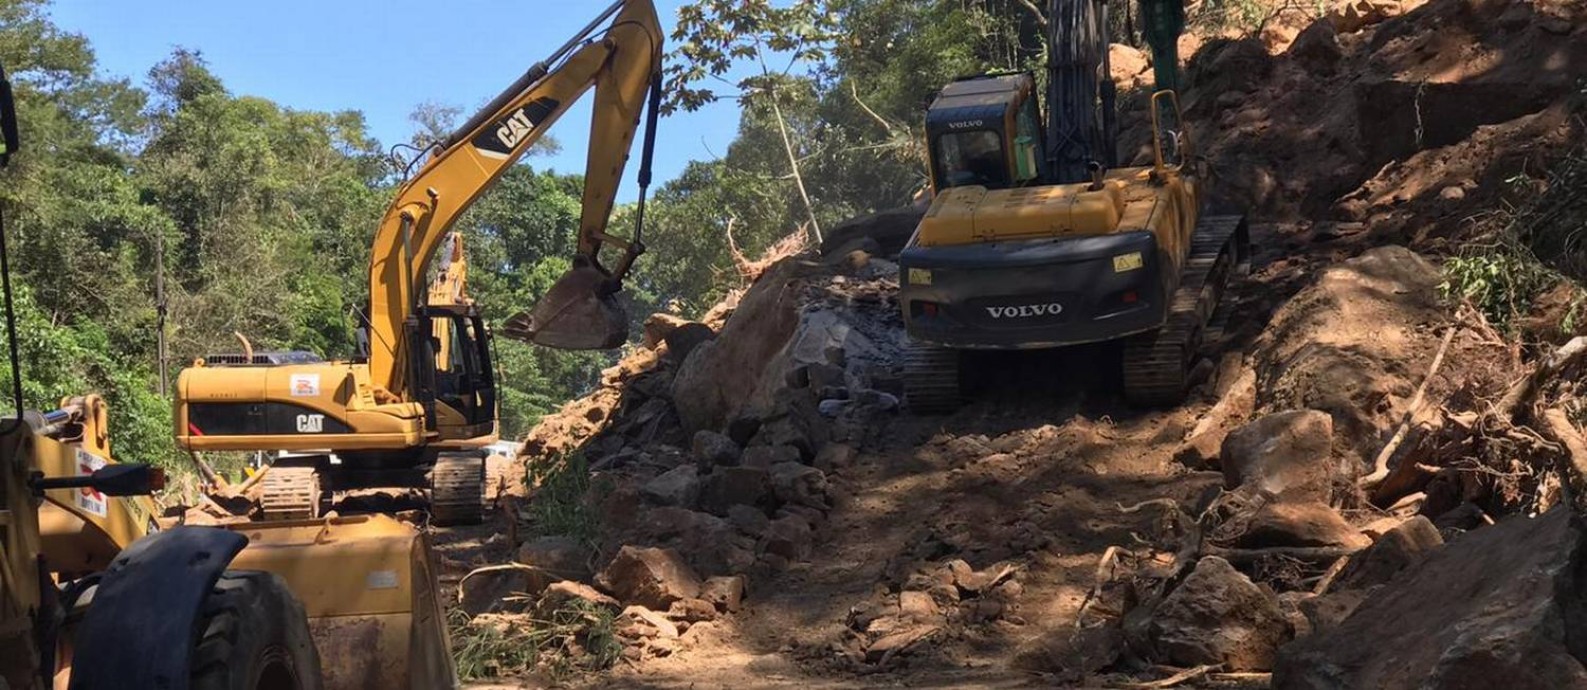 Máquinas e operários trabalham na retirada de parte da encosta que caiu fechada estrada Foto: Divulgação